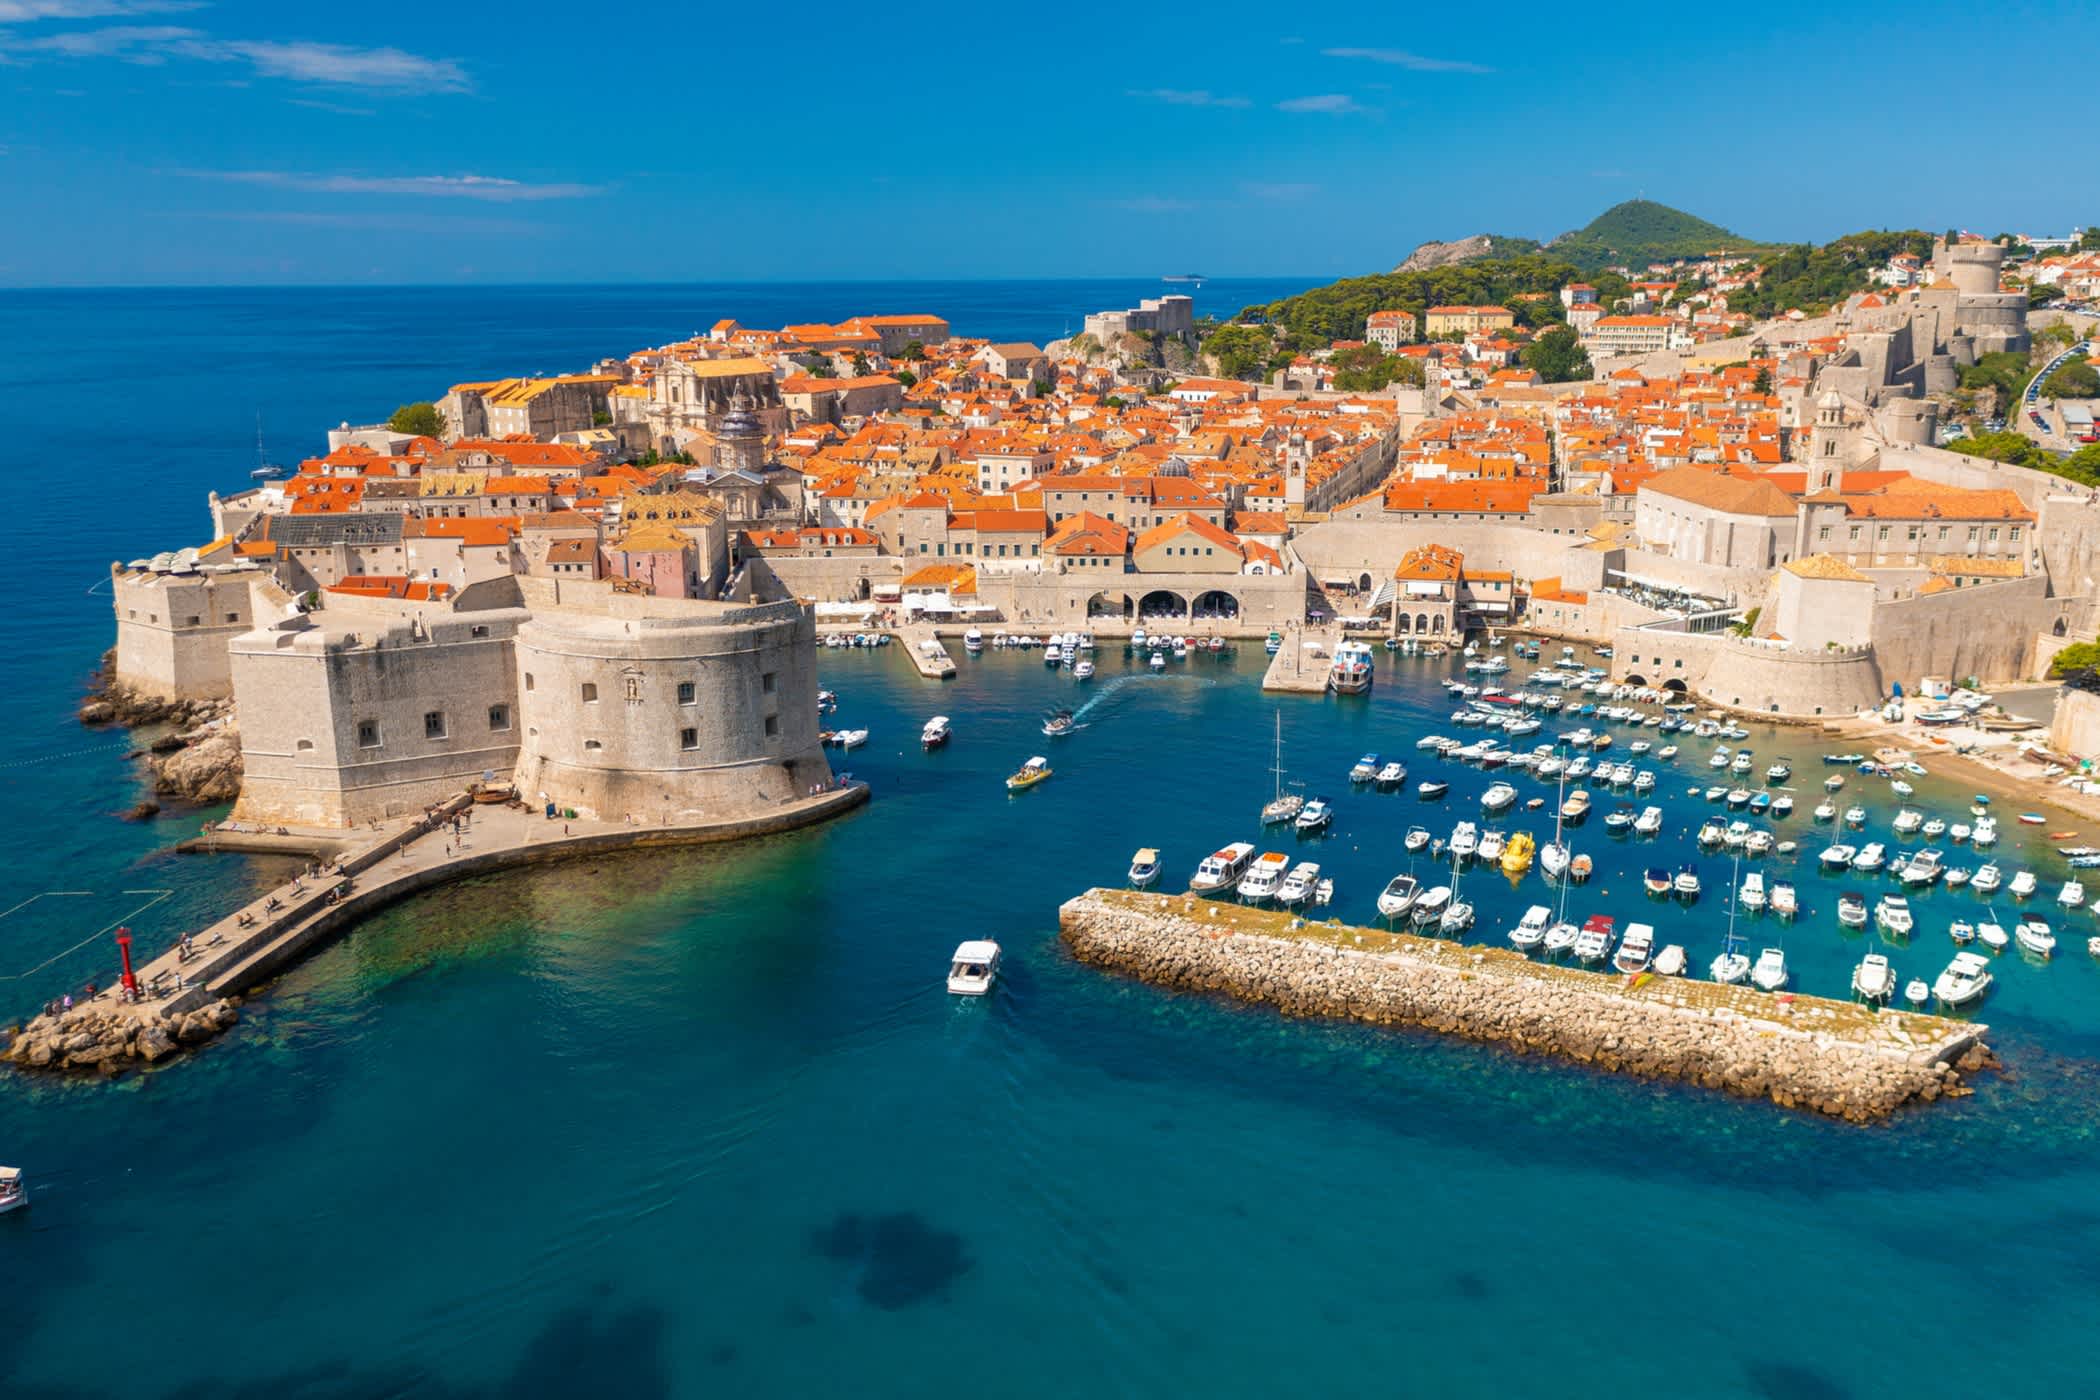 Vue de la ville de Dubrovnik depuis la mer